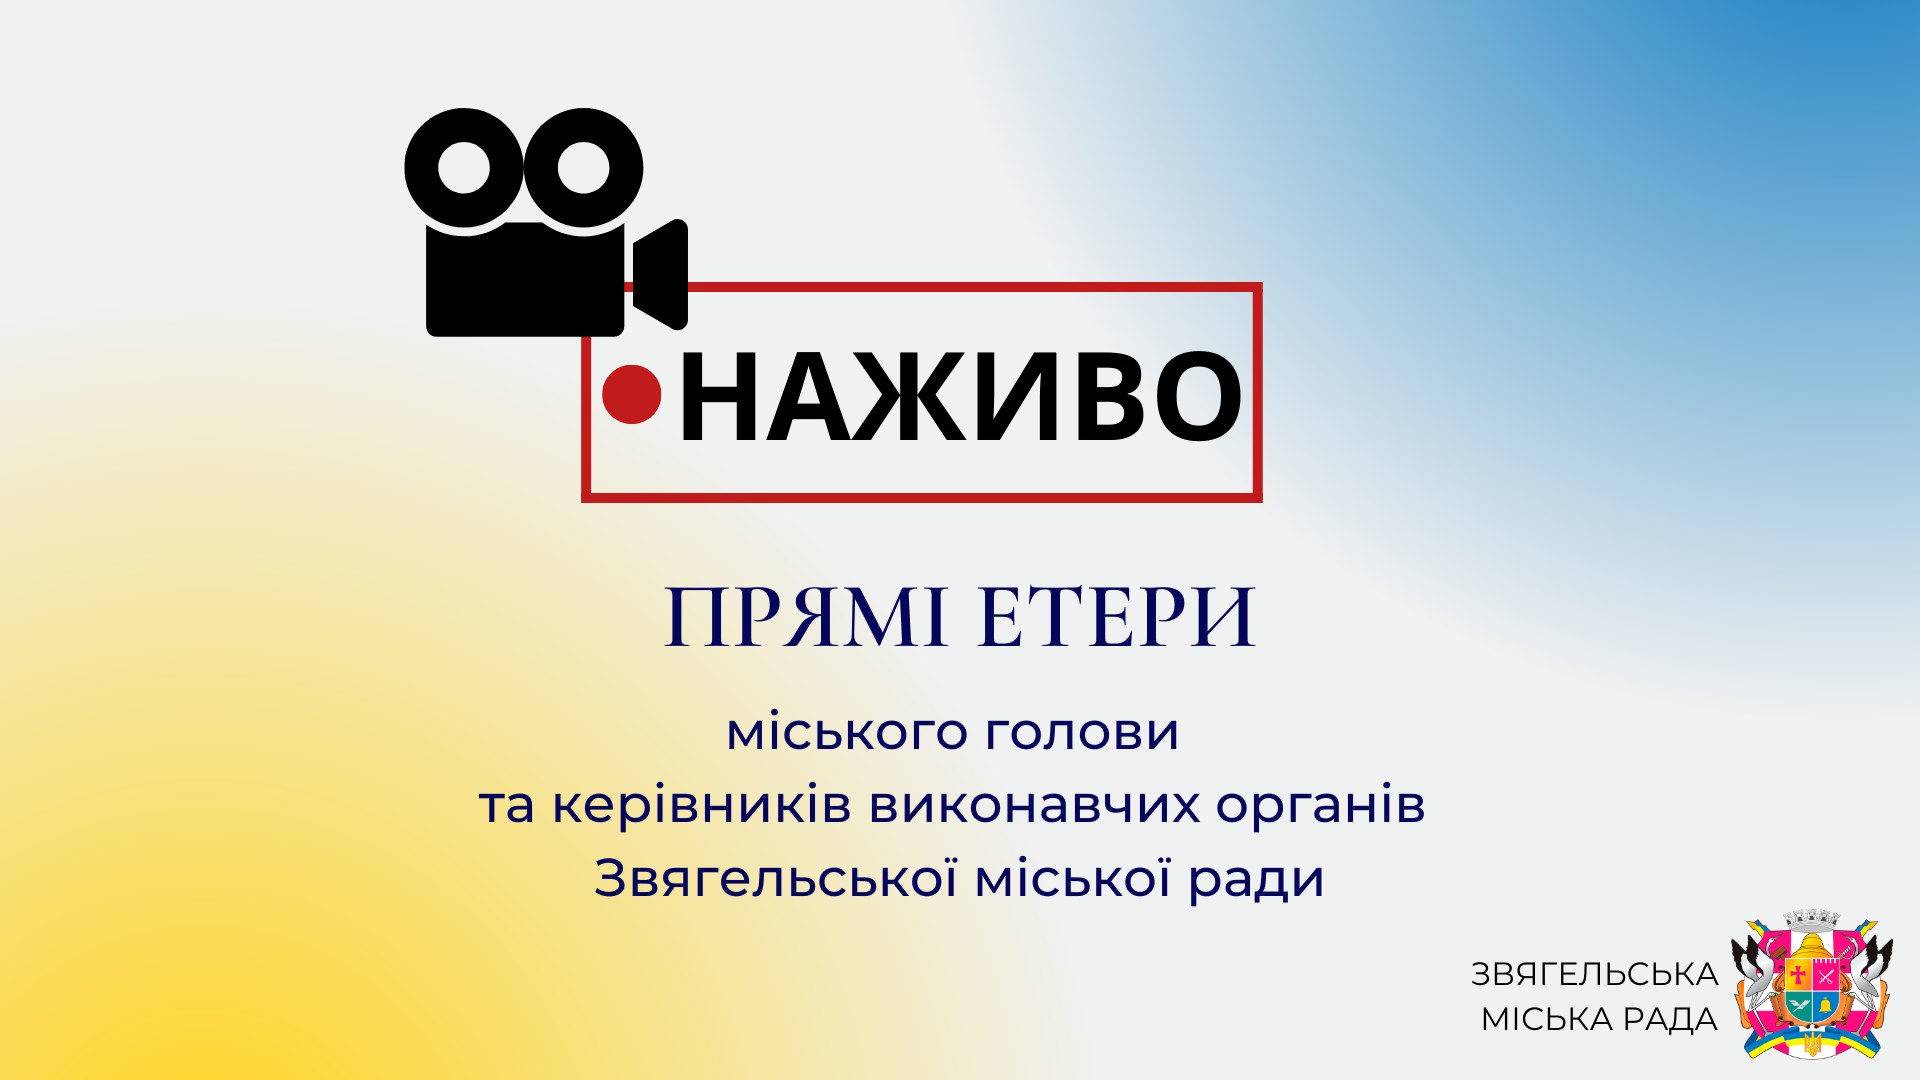 15 грудня о 18:00 відбудеться прямий етер з міським головою Миколою Боровцем